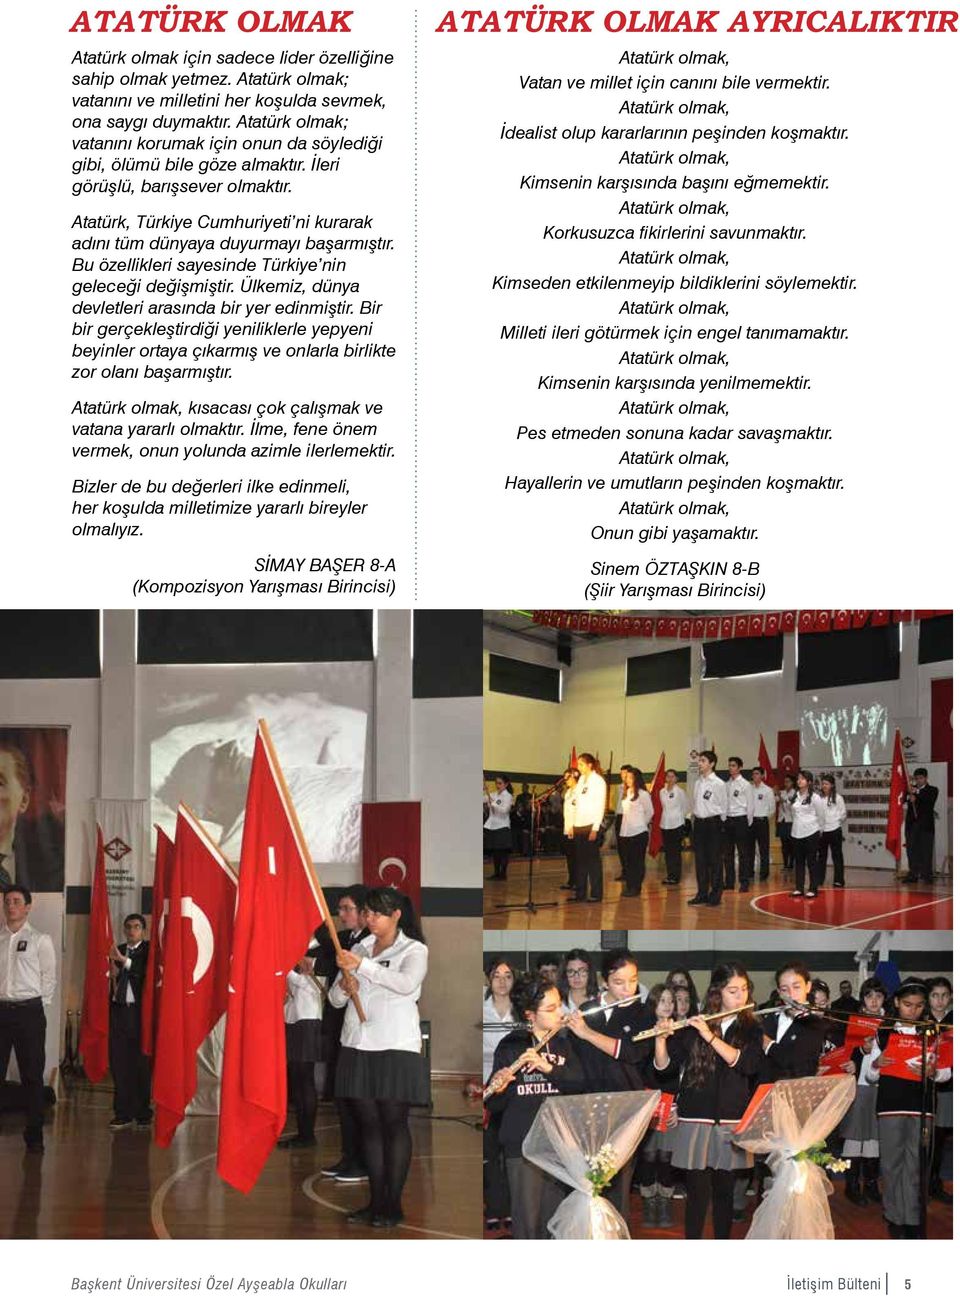 Atatürk, Türkiye Cumhuriyeti ni kurarak adını tüm dünyaya duyurmayı başarmıştır. Bu özellikleri sayesinde Türkiye nin geleceği değişmiştir. Ülkemiz, dünya devletleri arasında bir yer edinmiştir.